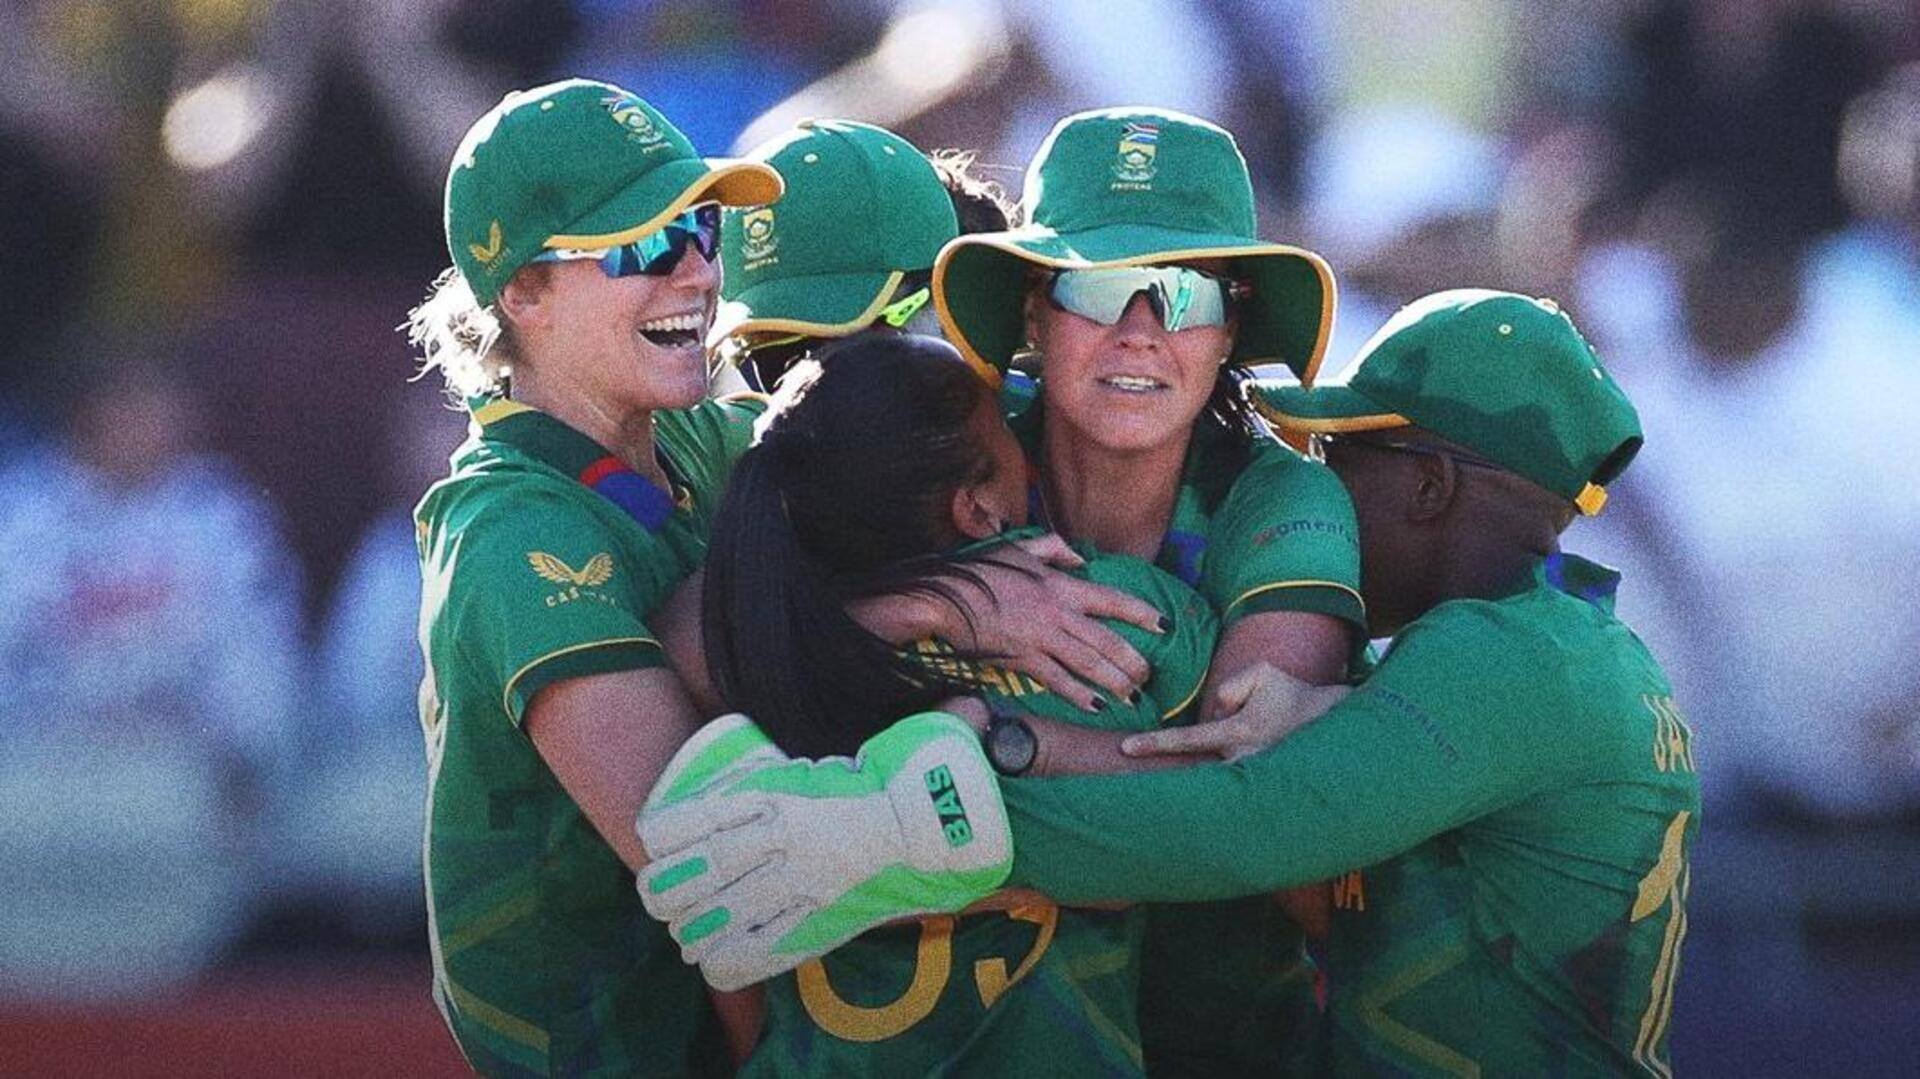 दक्षिण अफ्रीका महिला क्रिकेट टीम की फीस पुरुषों के बराबर हुई, इन देशों में पहले से व्यवस्था